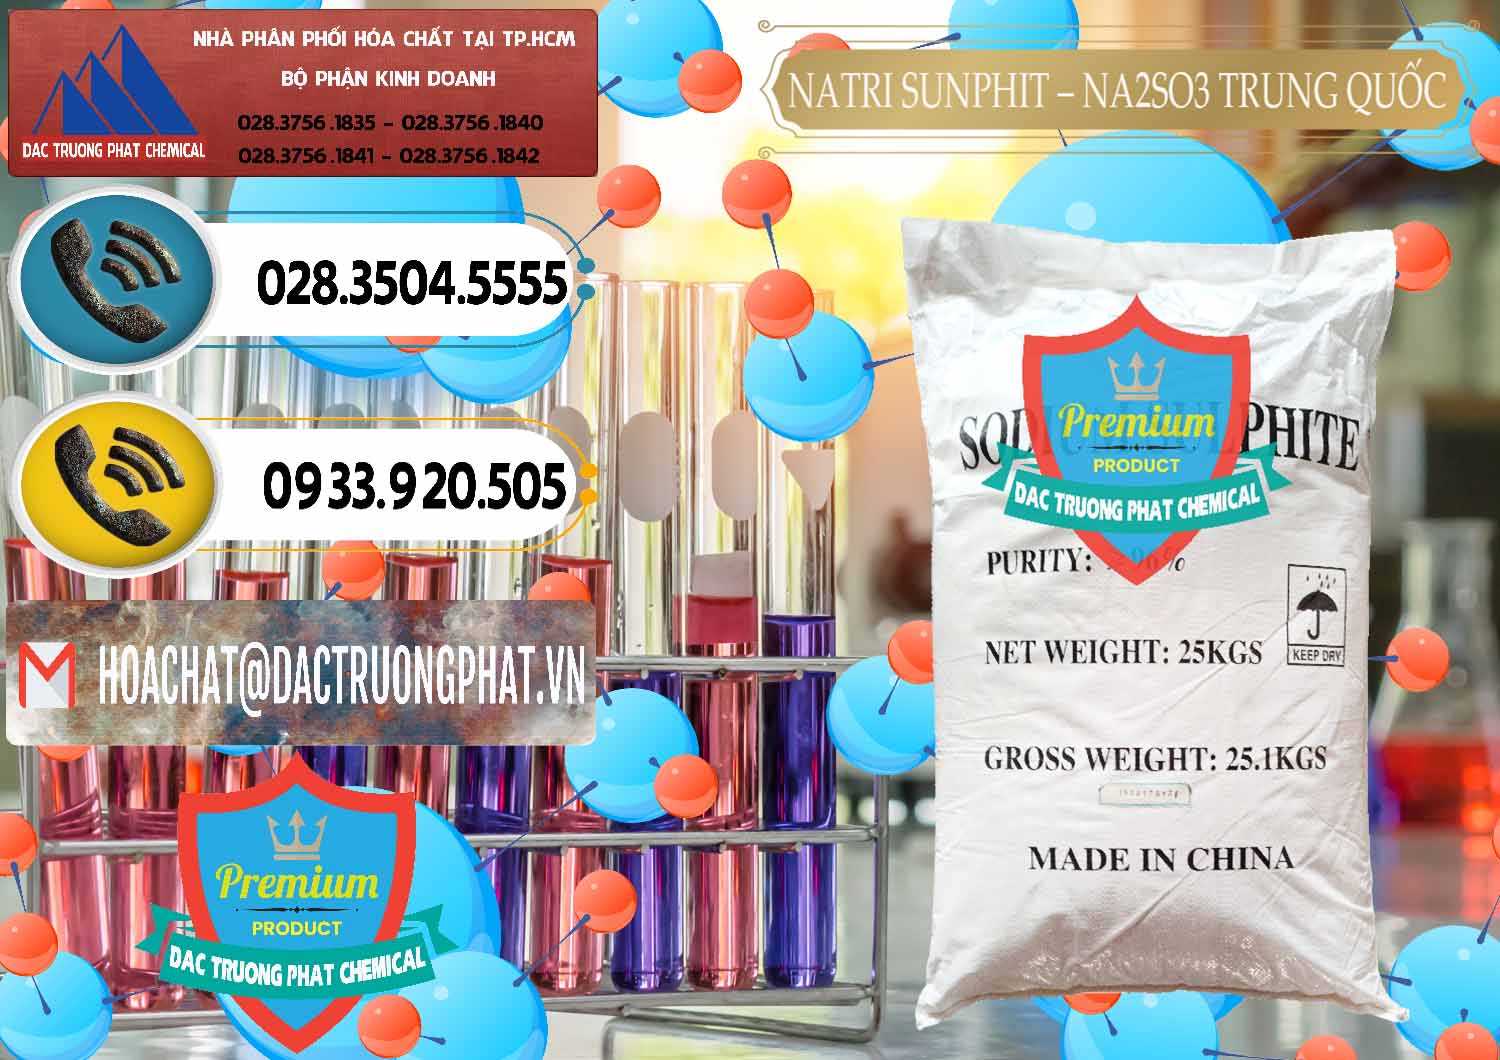 Cty chuyên nhập khẩu & bán Natri Sunphit - NA2SO3 Trung Quốc China - 0106 - Đơn vị chuyên cung ứng _ phân phối hóa chất tại TP.HCM - hoachatdetnhuom.vn